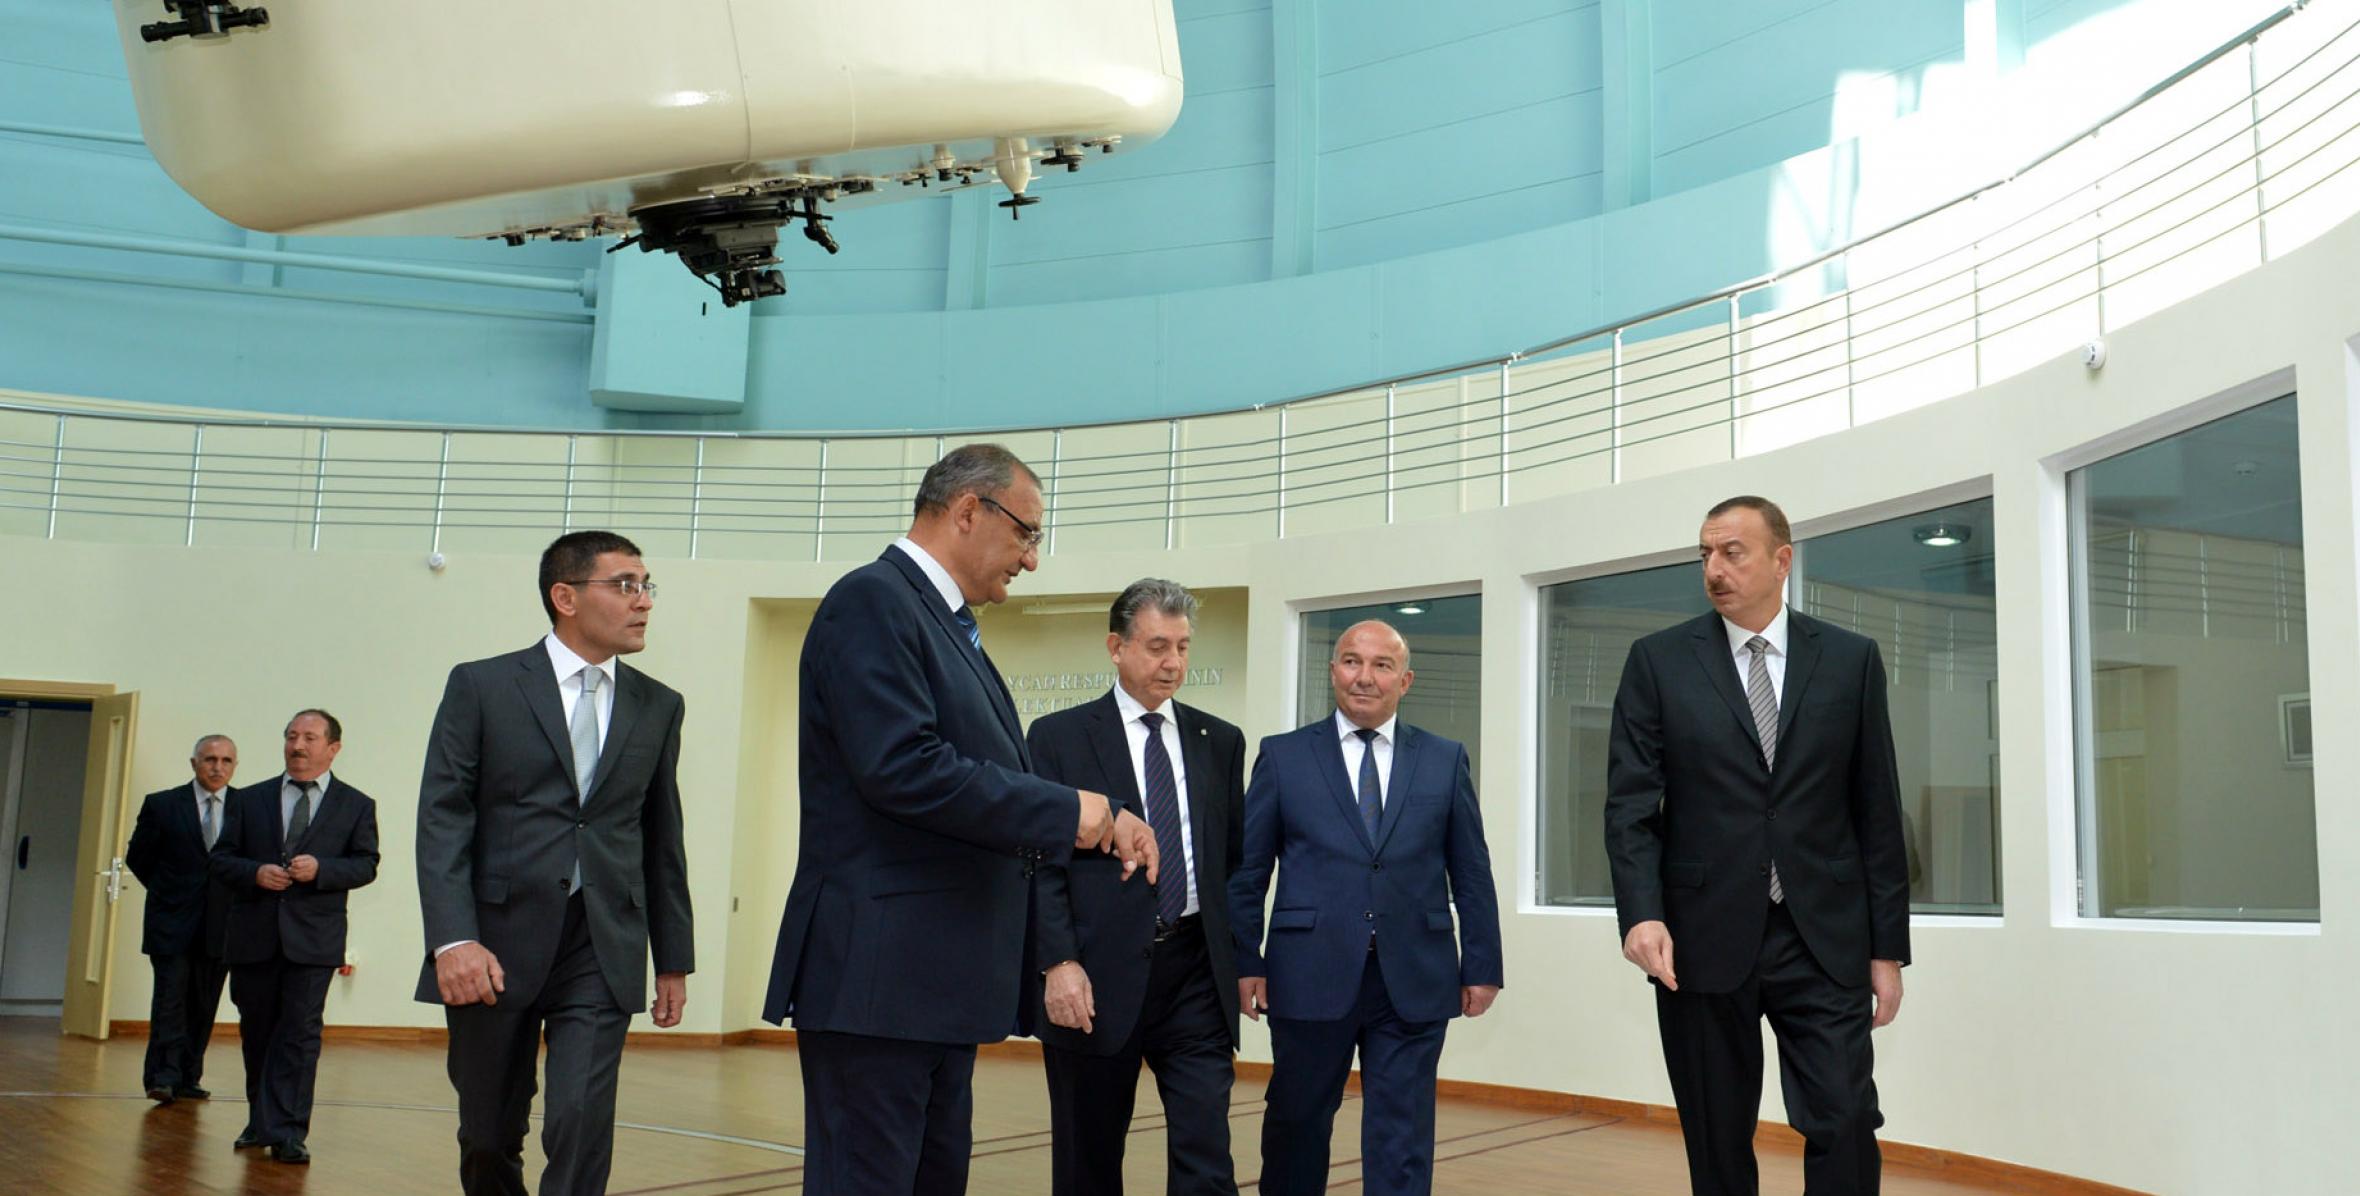 Ильхам Алиев ознакомился с Шамахинской астрофизической обсерваторией после капитального ремонта и реконструкции